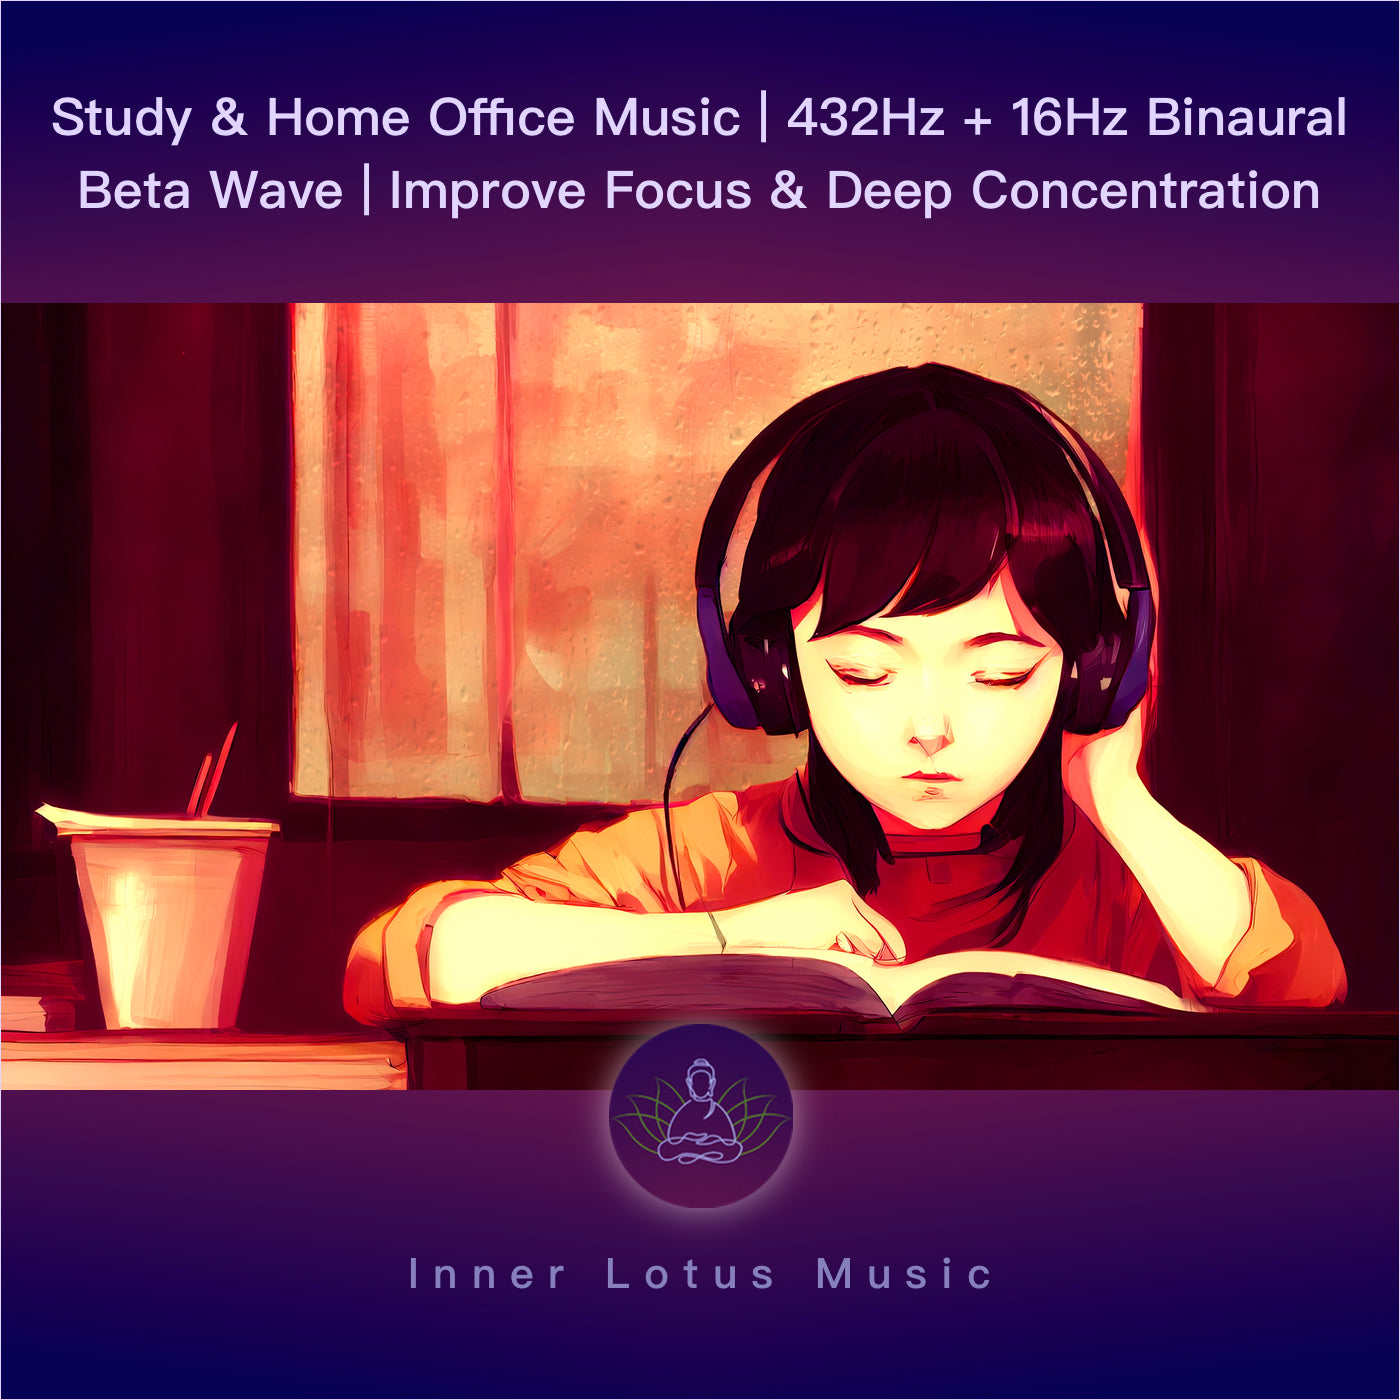 Música para Estudio y Home Office | Mejora Concentración y Memoria | 432Hz + 16Hz Onda Beta Binaural